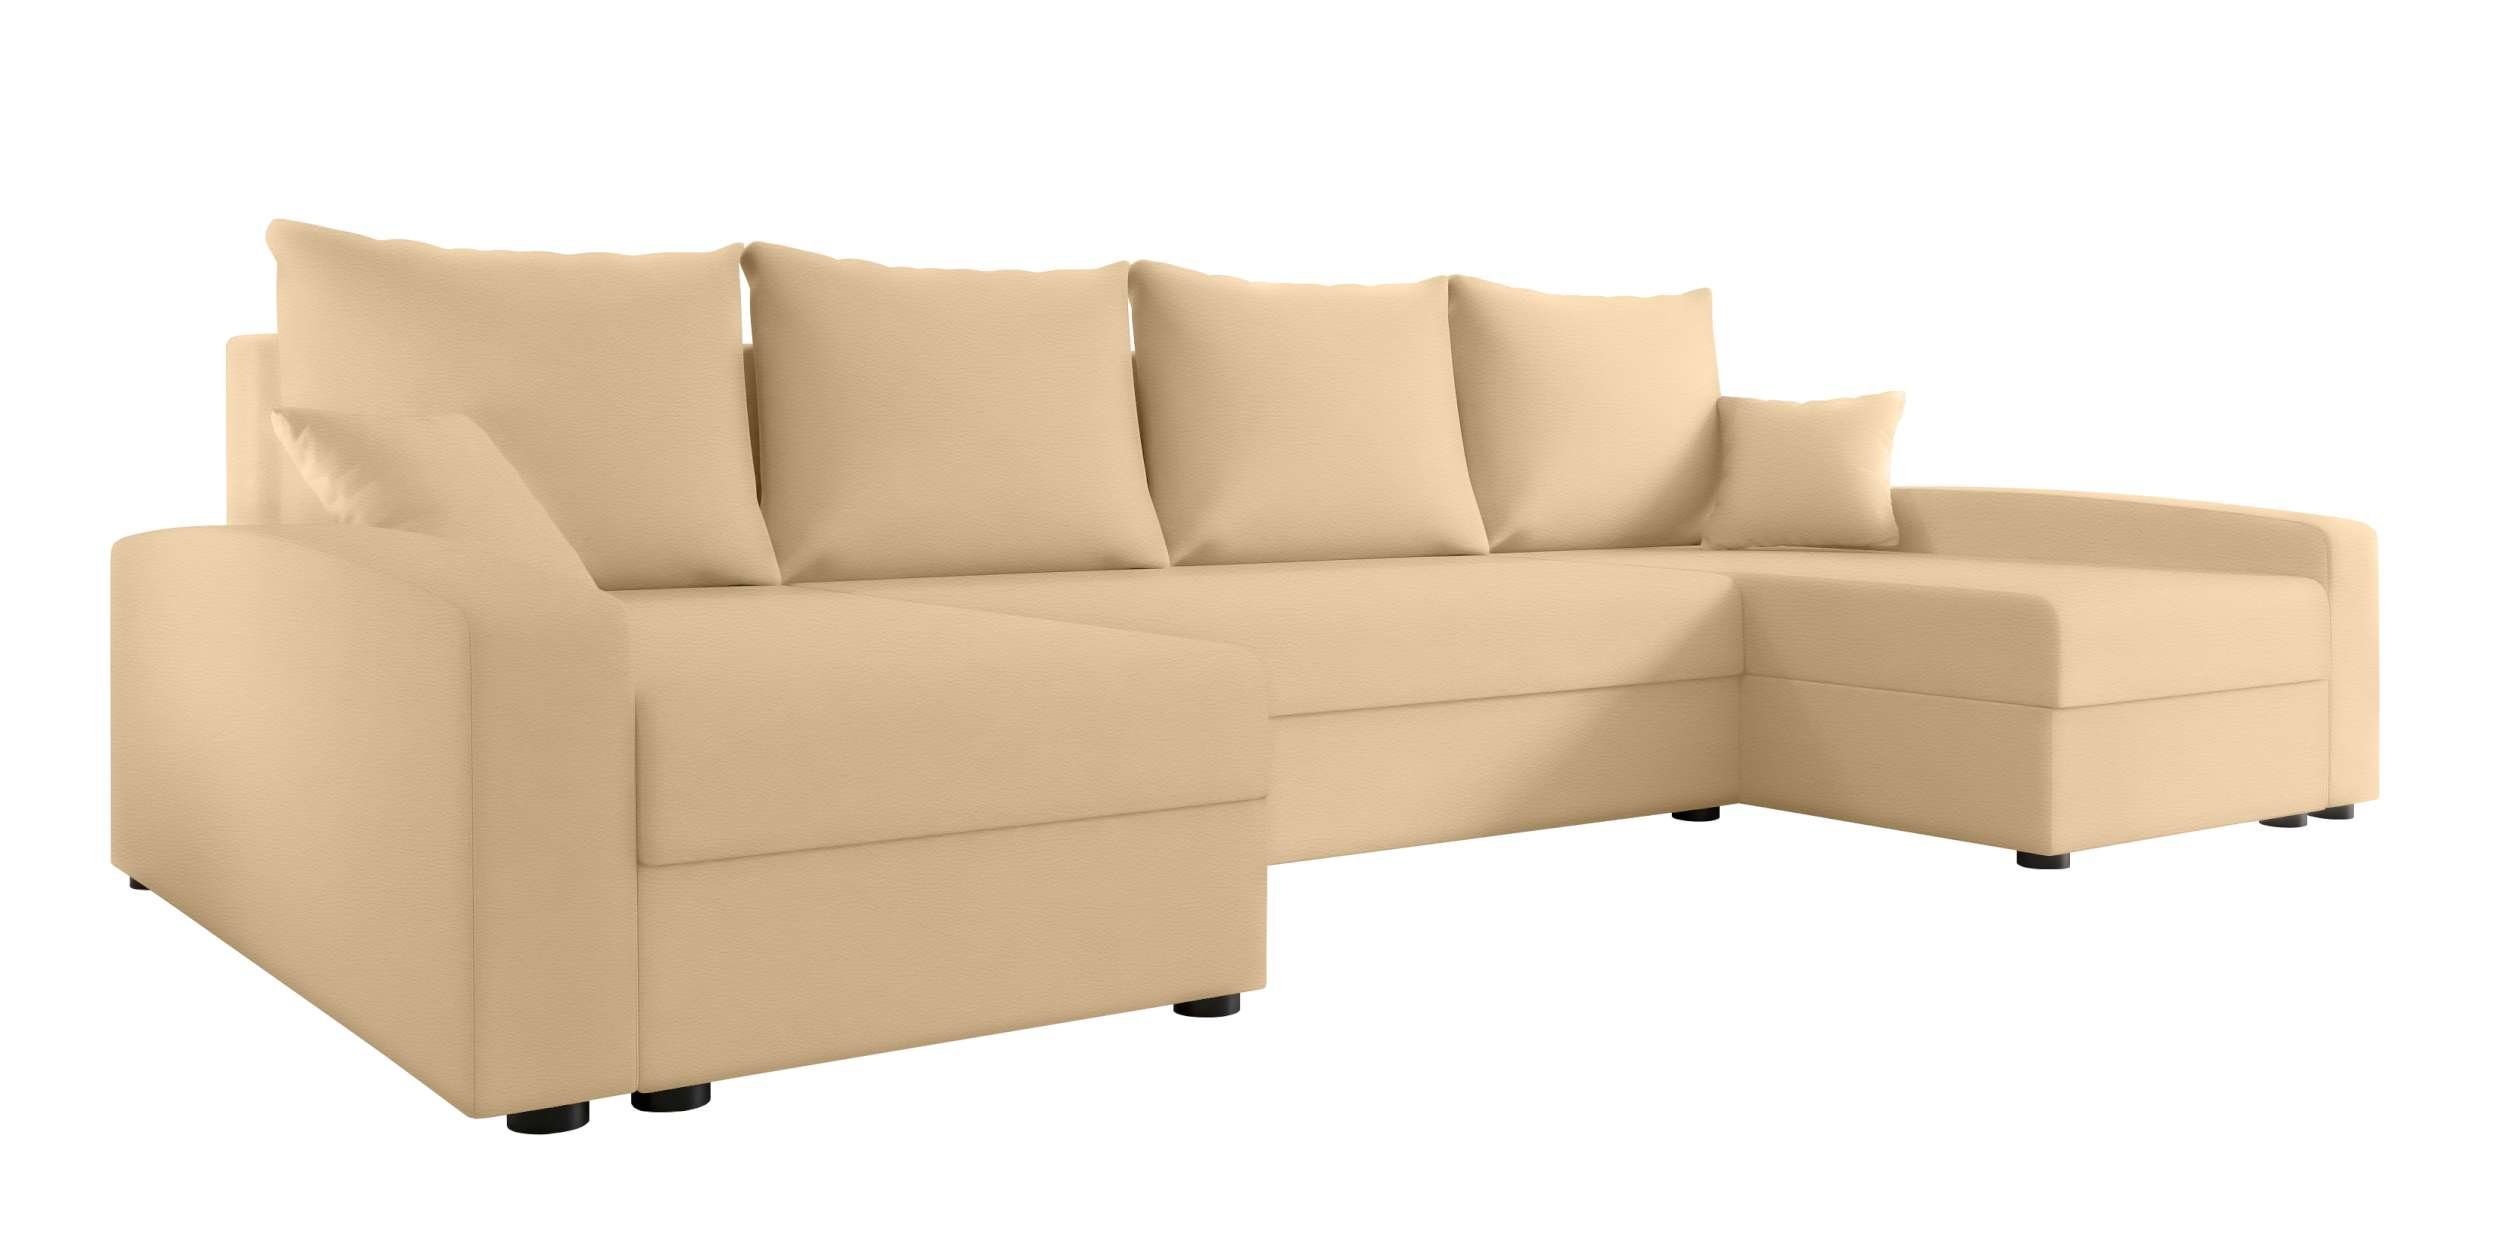 Bettfunktion, Eckcouch, Bettkasten, mit Wohnlandschaft Sofa, Addison, U-Form, Modern Sitzkomfort, Stylefy mit Design